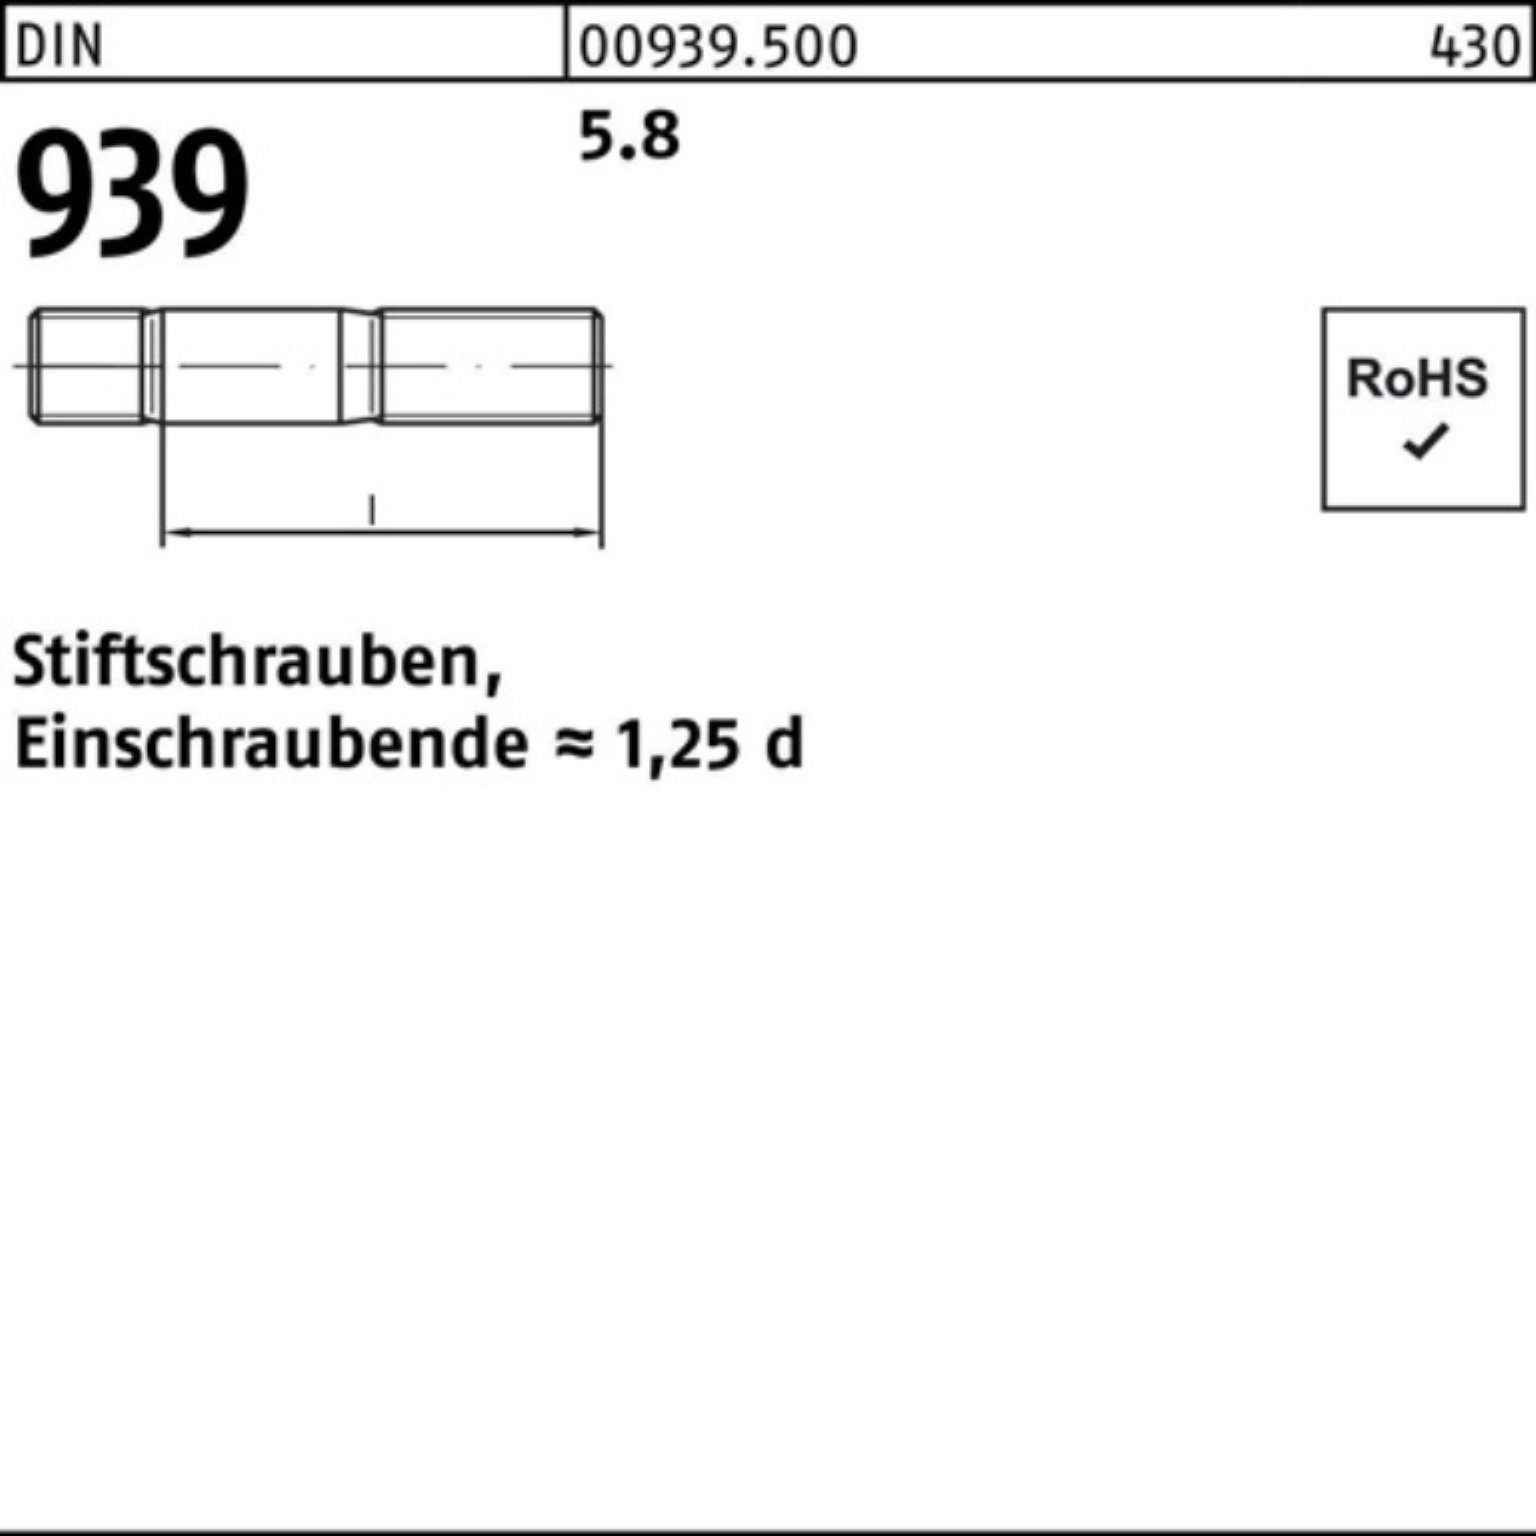 Reyher Stiftschraube 100er 5.8 M10x Stiftschraube Pack Einschraubende=1,25d DIN 939 50 100